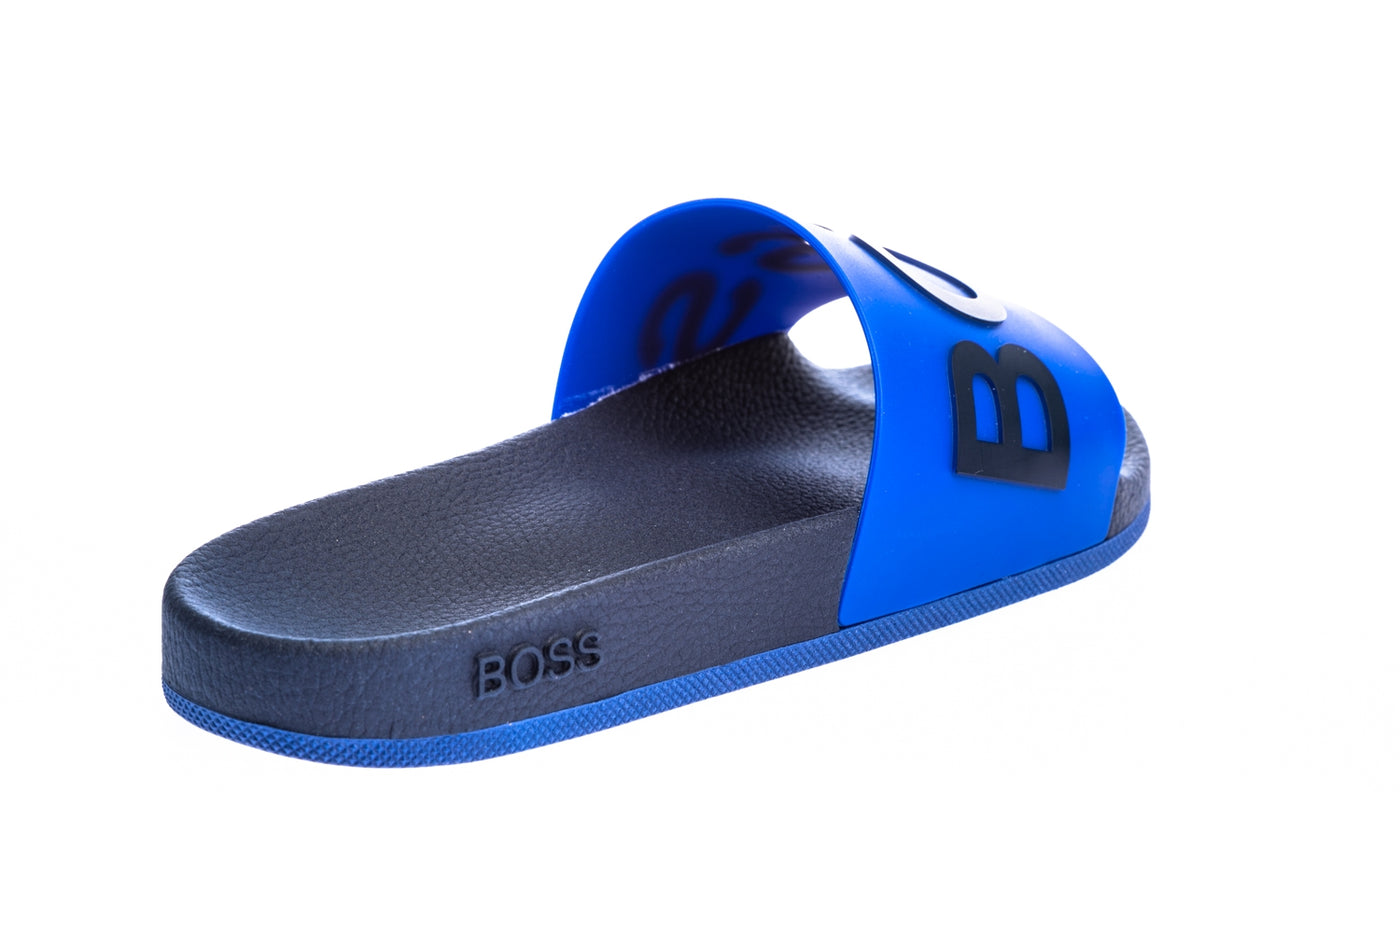 BOSS Bay_Slid_rblg2 Slide in Indigo Blue